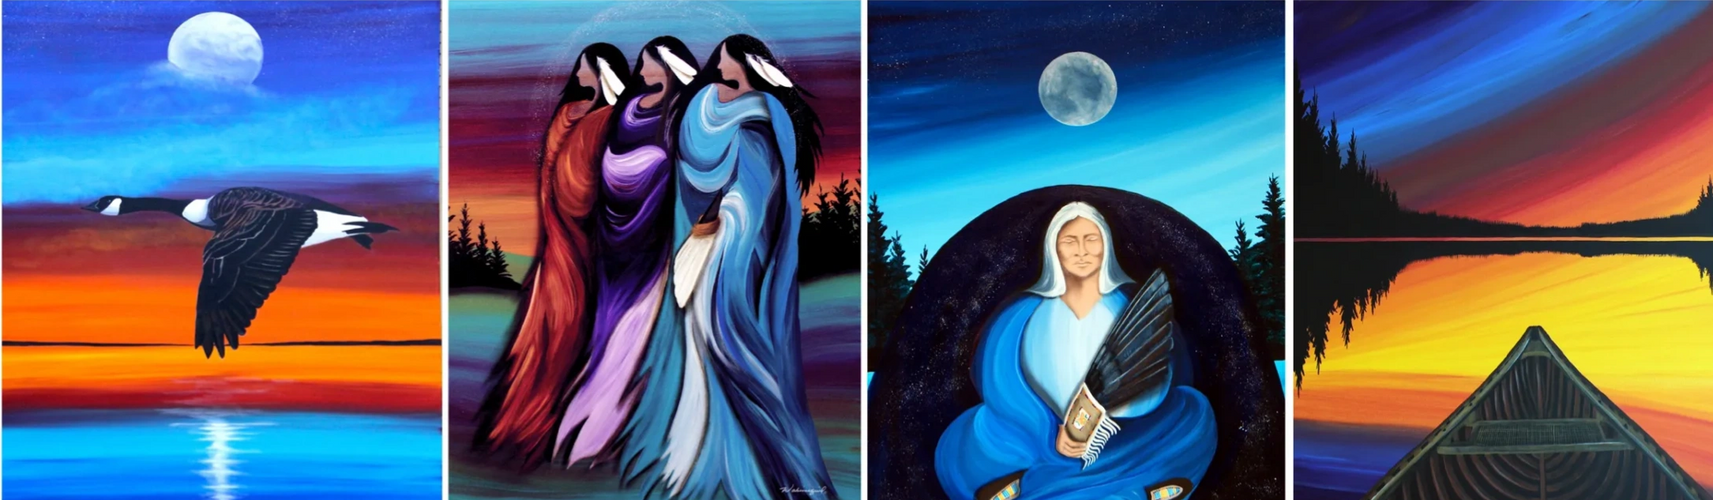 Wabimeguil Artist
Betty Albert Artist
First Nations Artist
Cree Artist
Indigenous Artist
